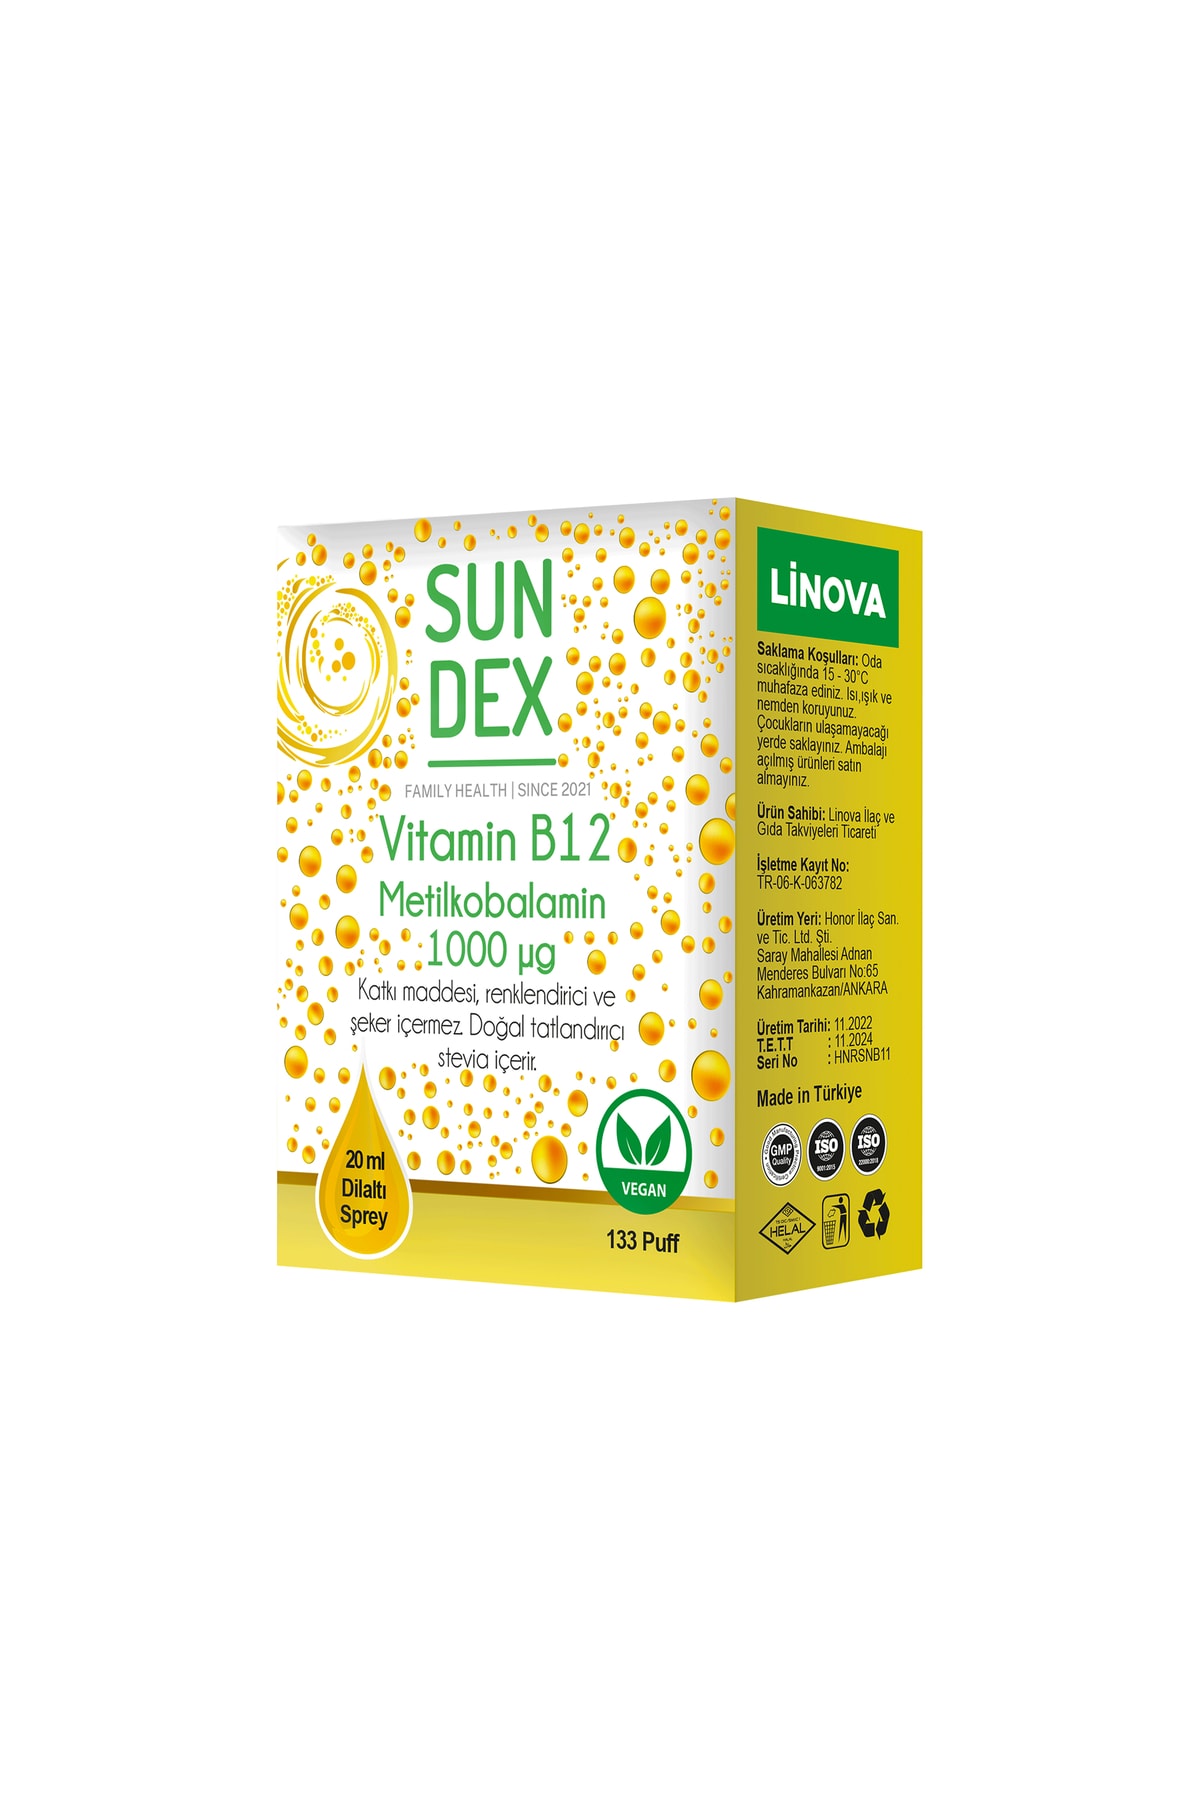 Sun Dex Family Health Since 2021 Vitamin B12 Metilkobalamin 1000 Mcg 20 ml Dilaltı Sprey